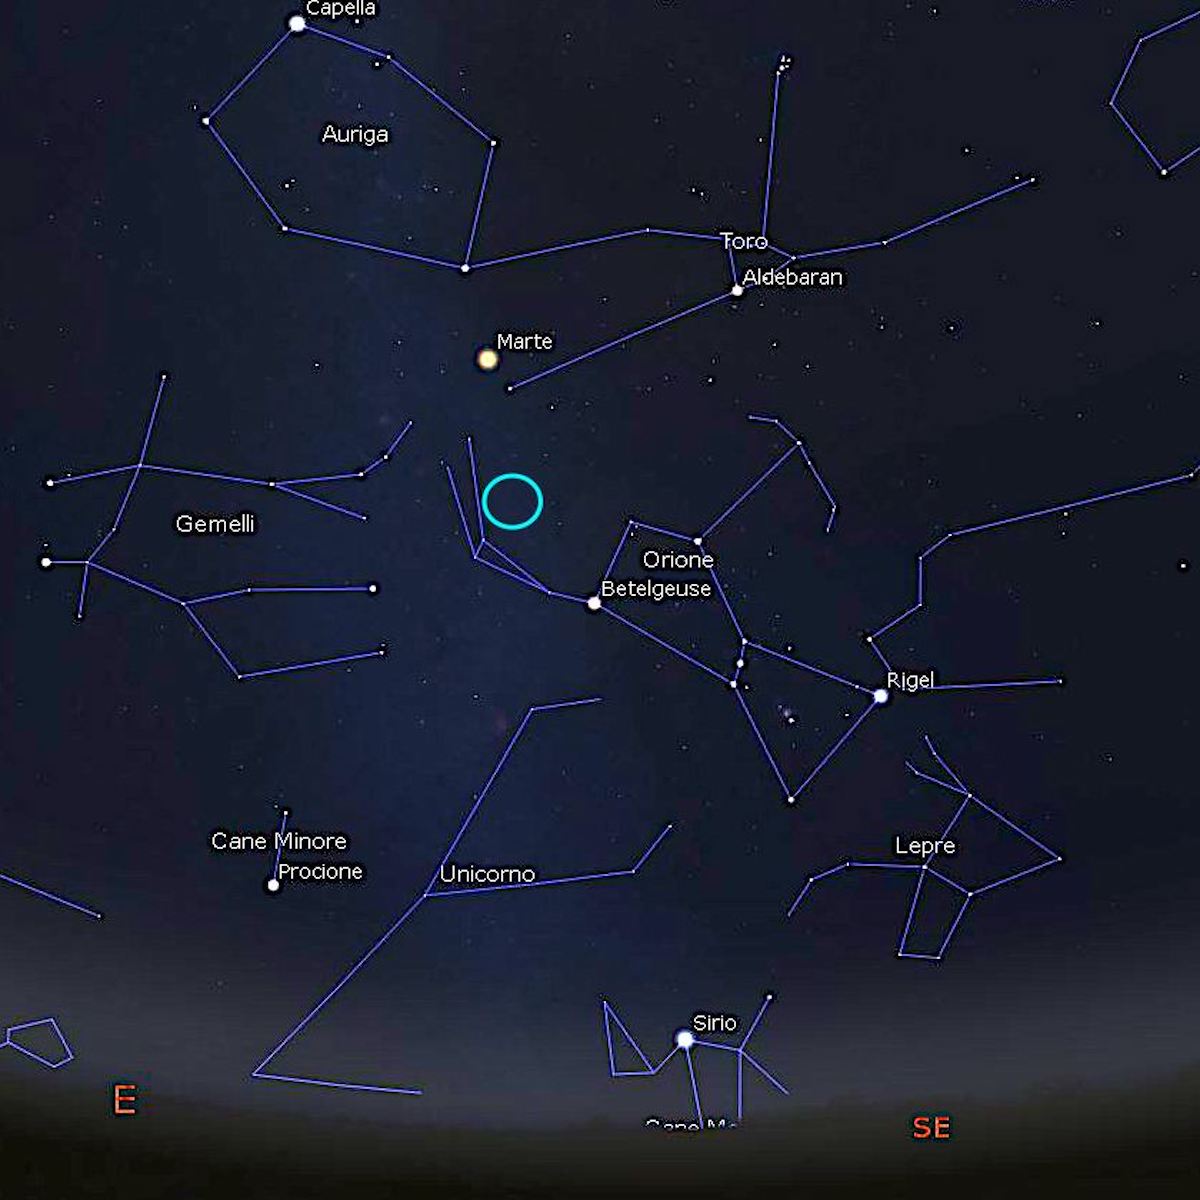 Con il cerchio celeste abbiamo evidenziato la posizione sulla volta celeste del radiante delle Orionidi, le meteore visibili attorno al 21-22 ottobre. Poco sopra è visibile anche 